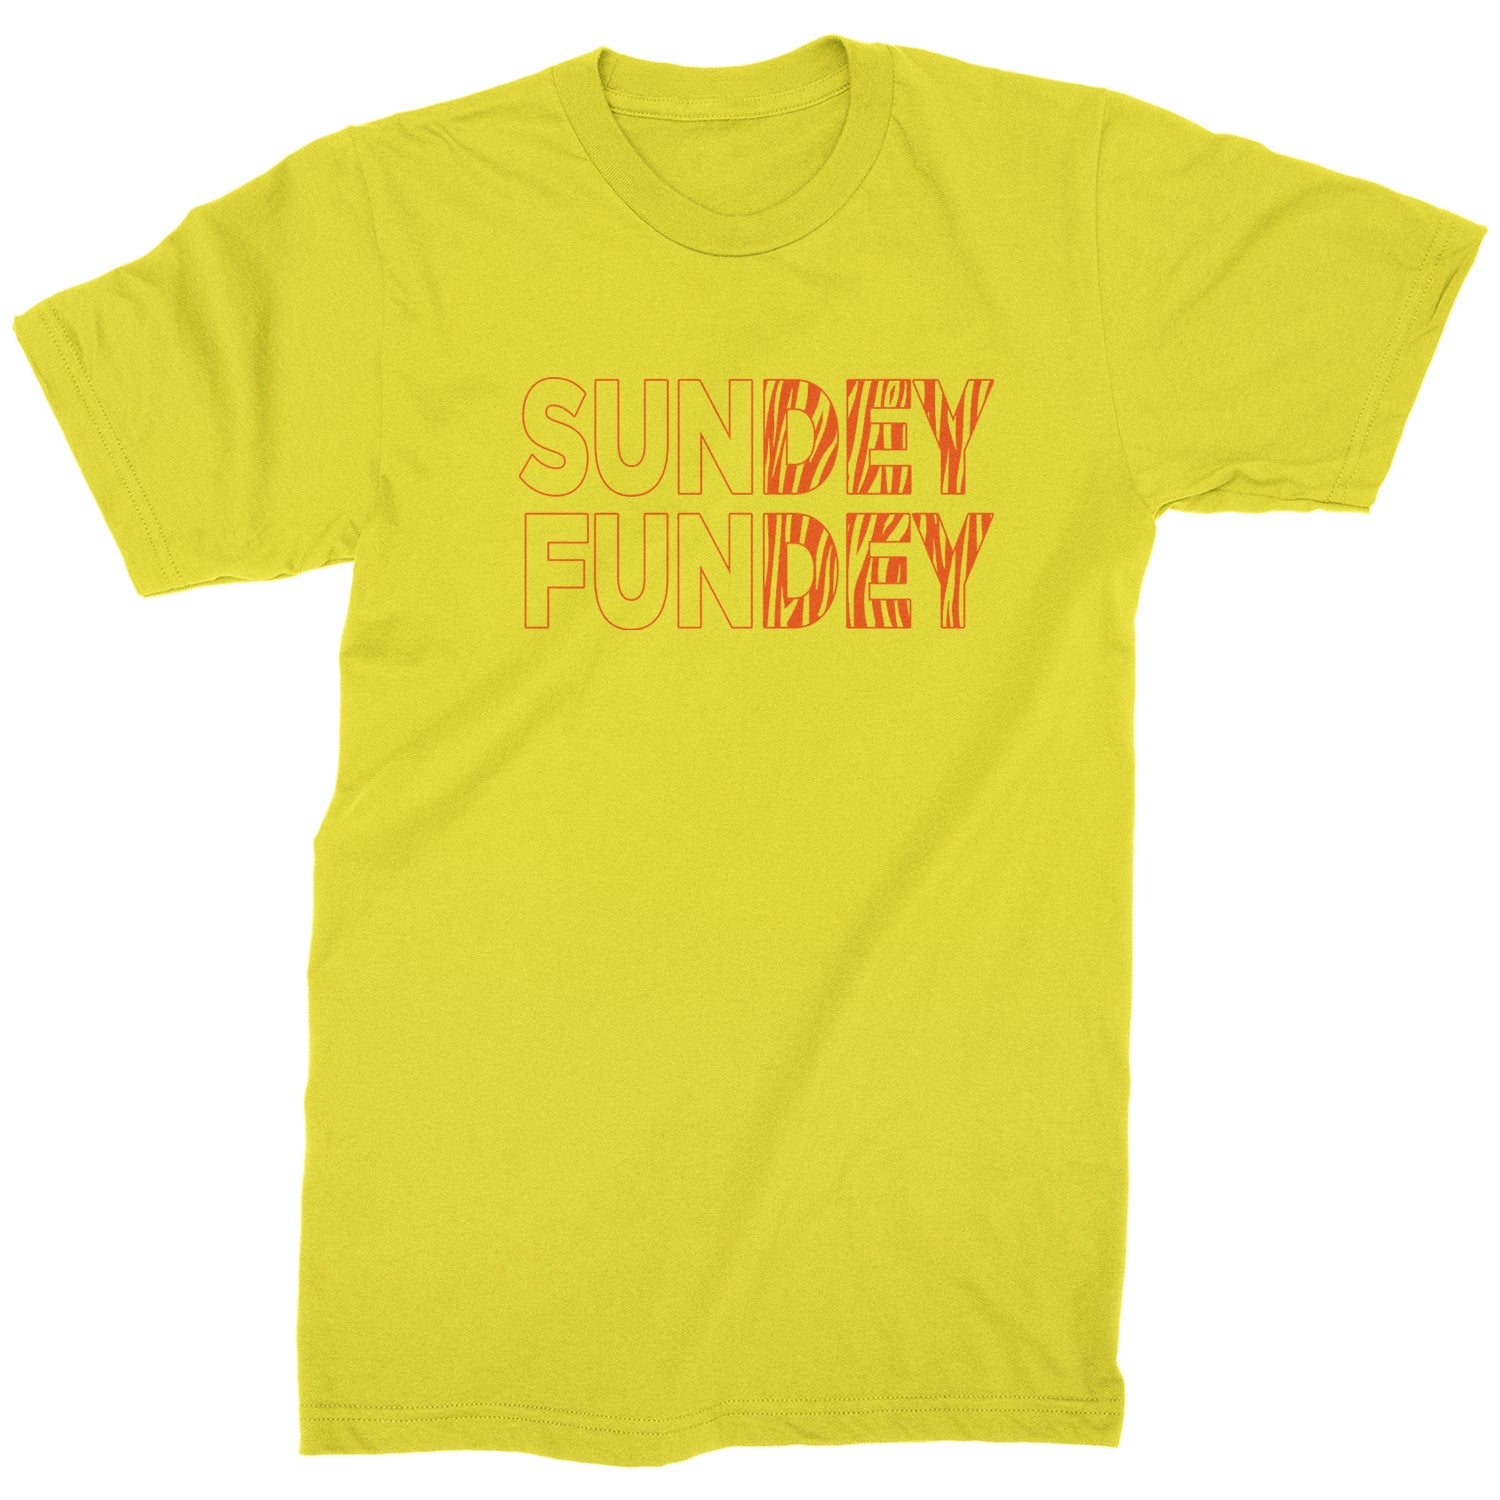 SunDEY FunDEY Sunday Funday Mens T-shirt ball, burrow, dey, foot, football, joe, ohio, sports, who by Expression Tees